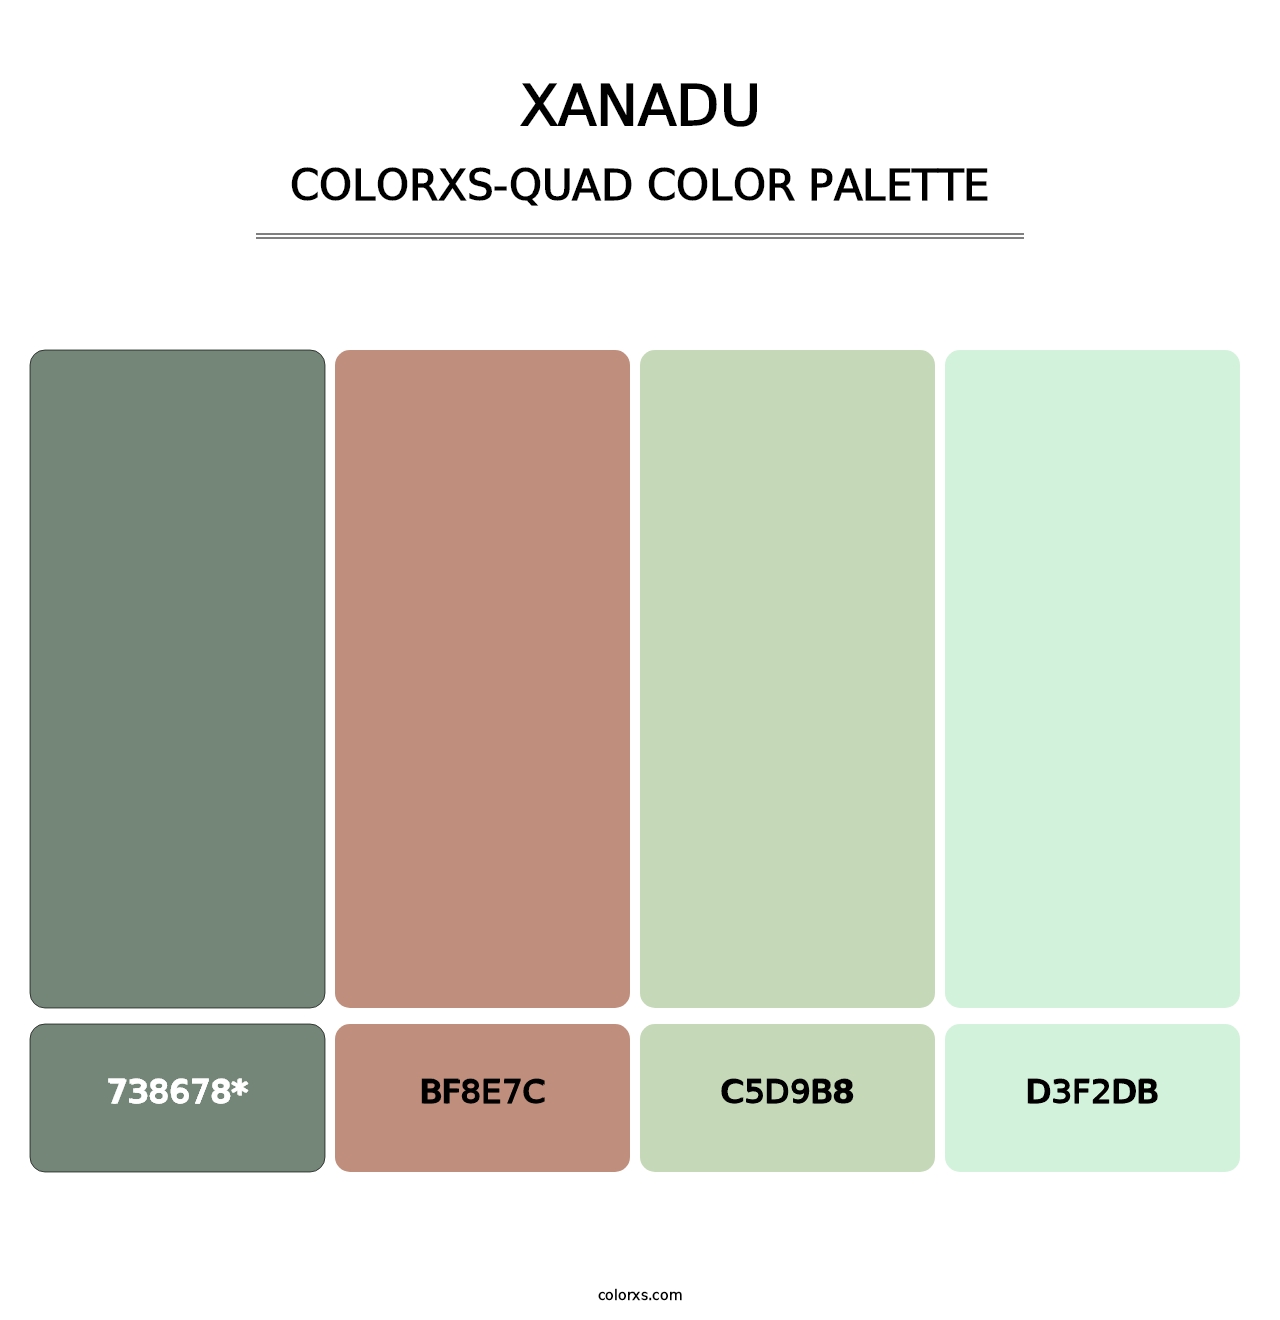 Xanadu - Colorxs Quad Palette